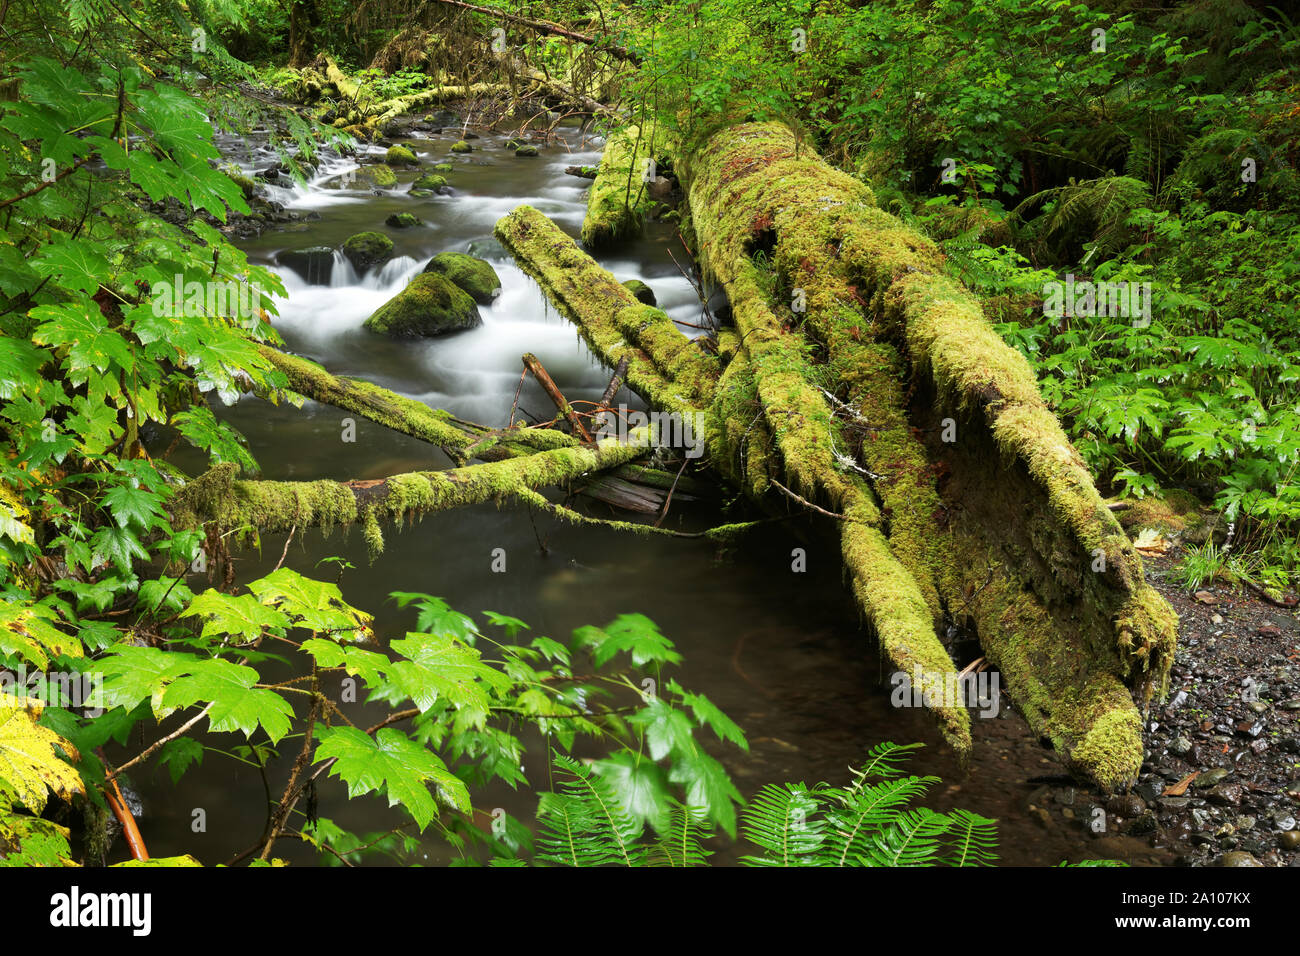 La branche sud de la petite rivière coule à travers la forêt tropicale, les arbres de cèdre en décomposition, Olympic National Park, Clallam County, Washington, USA Banque D'Images